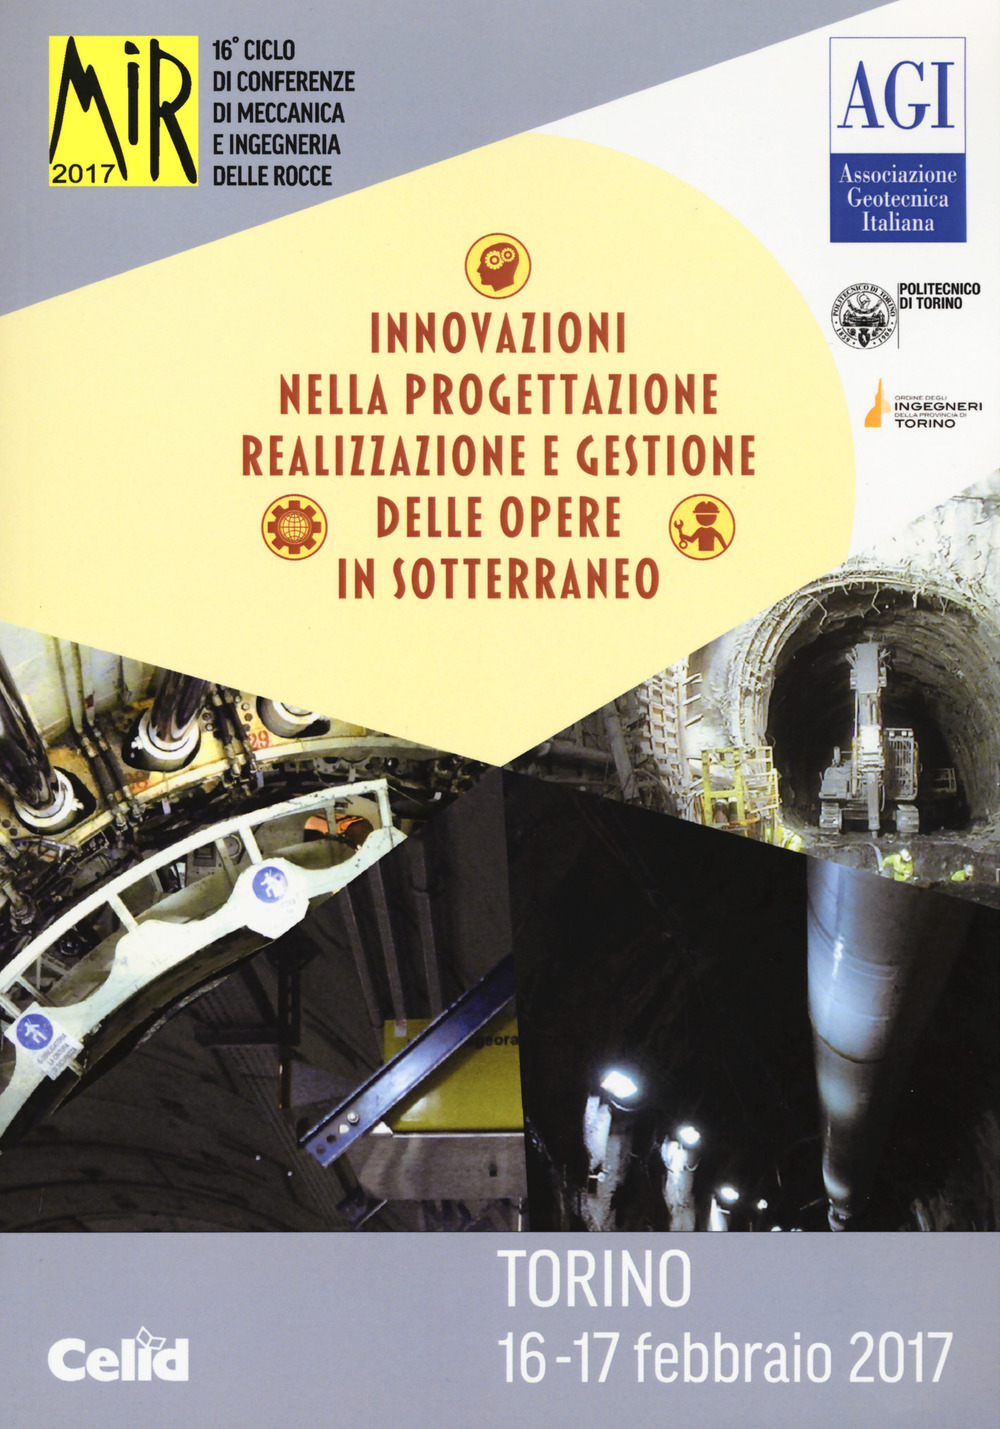 Image of Mir 2017. Innovazioni nella progettazione e gestione delle opere in sotterraneo. 16º ciclo di conferenze di meccanica e ingegneria delle rocce (Torino, 16-17 febbraio 2017)